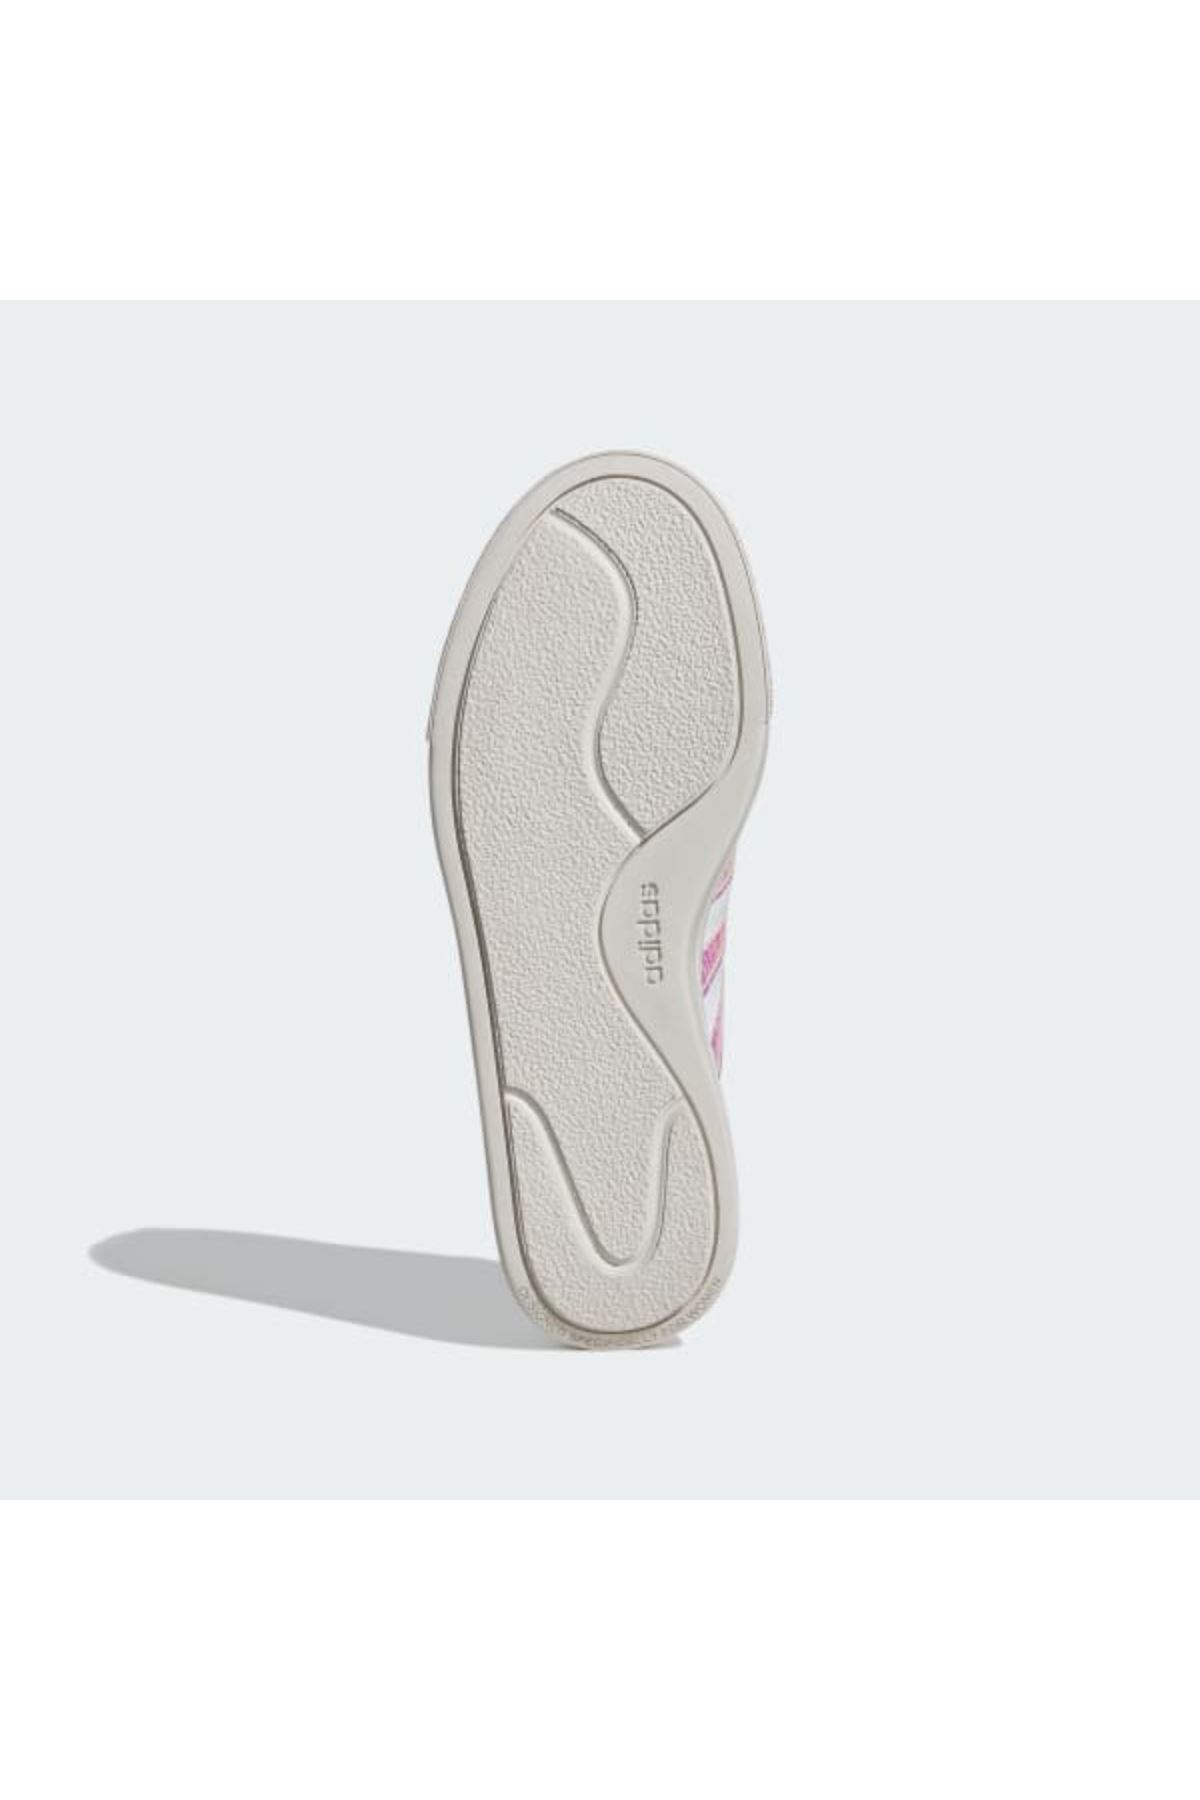 Adidas Court Platform Kadın Beyaz Spor Ayakkabı - IG8606